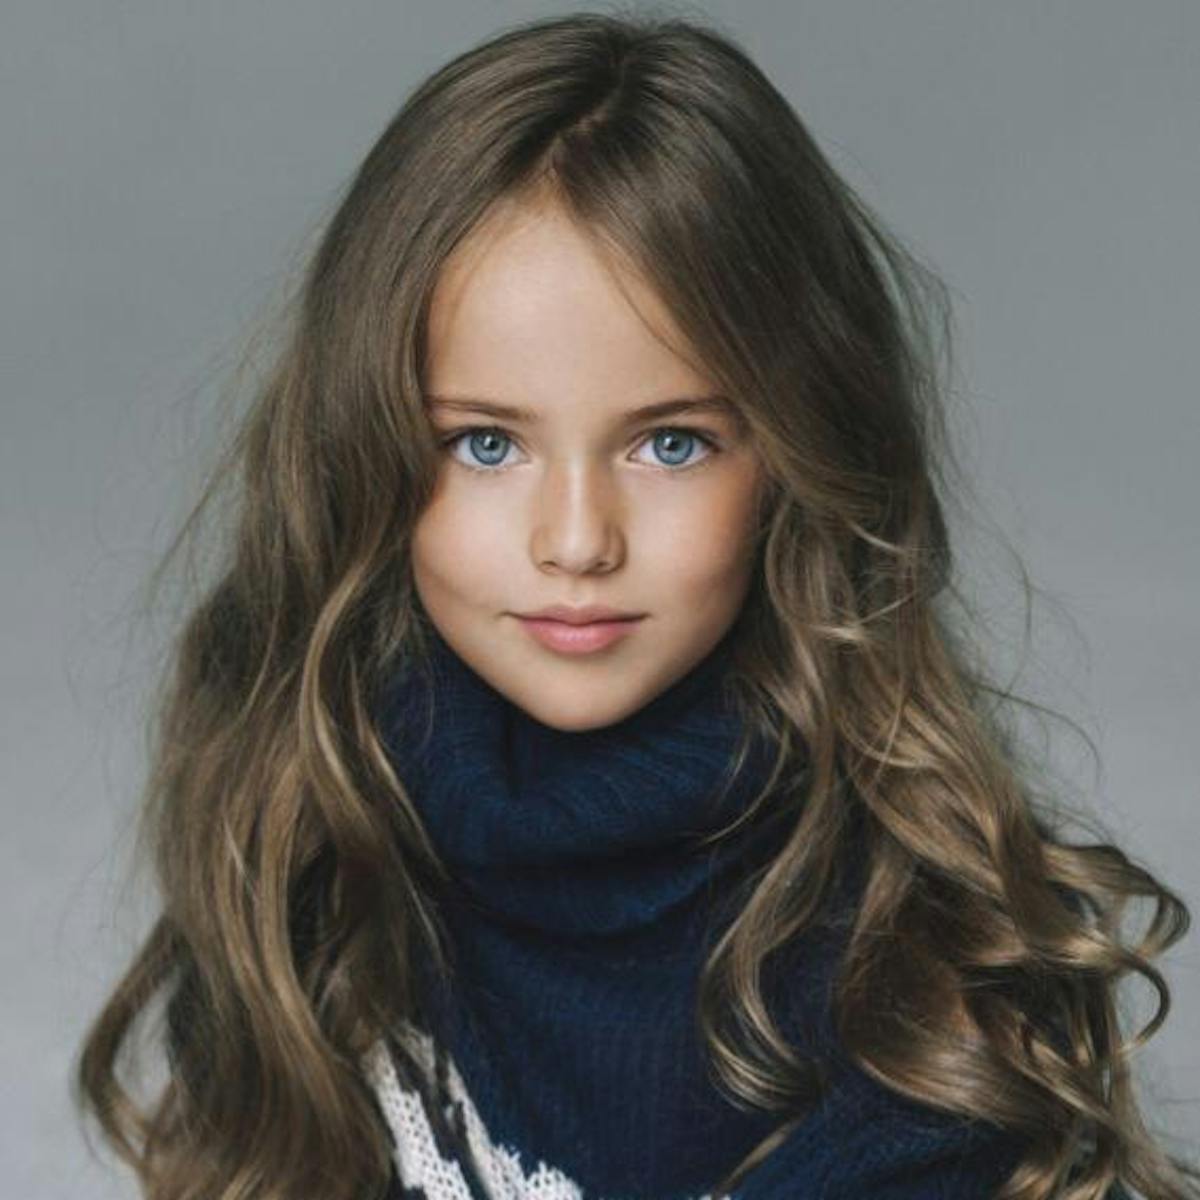 Kristina Pimenova : à 10 ans, la plus jolie petite fille du monde fait  débat : Femme Actuelle Le MAG